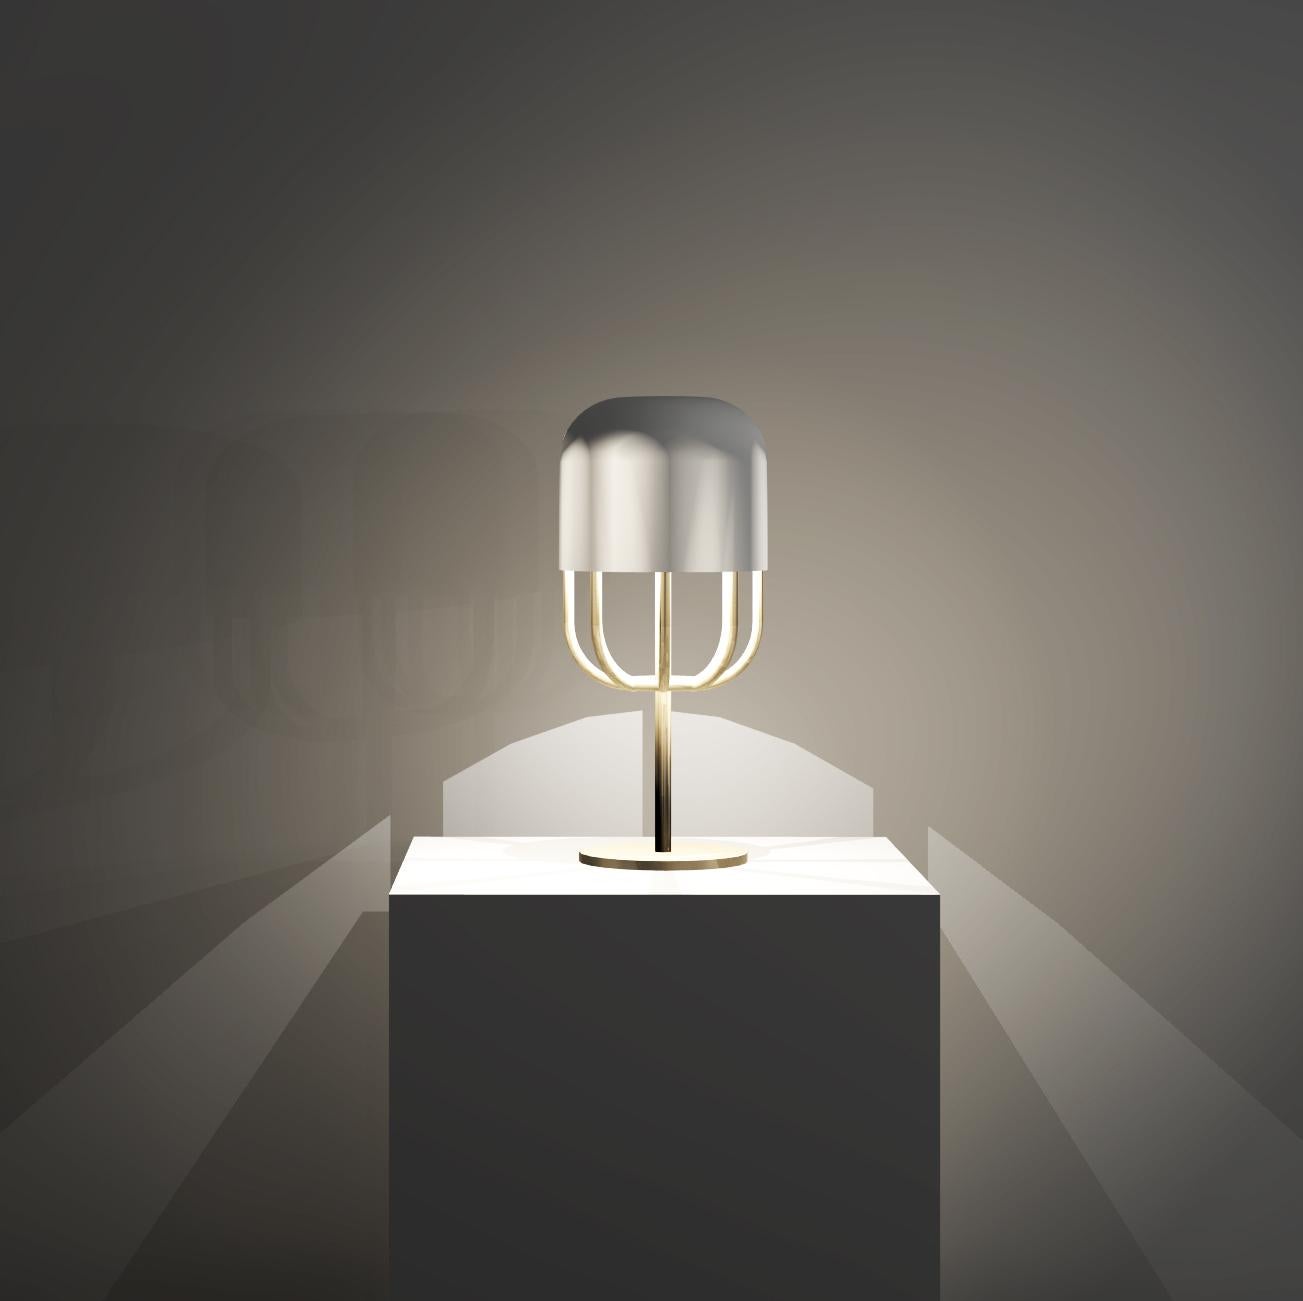 Cette lampe à poser présente un design audacieux qui utilise la symétrie entre l'enveloppe extérieure et le cadre d'une forme de capsule. La douce lueur du verre opale est élégamment soutenue et mise en valeur par une belle structure en laiton